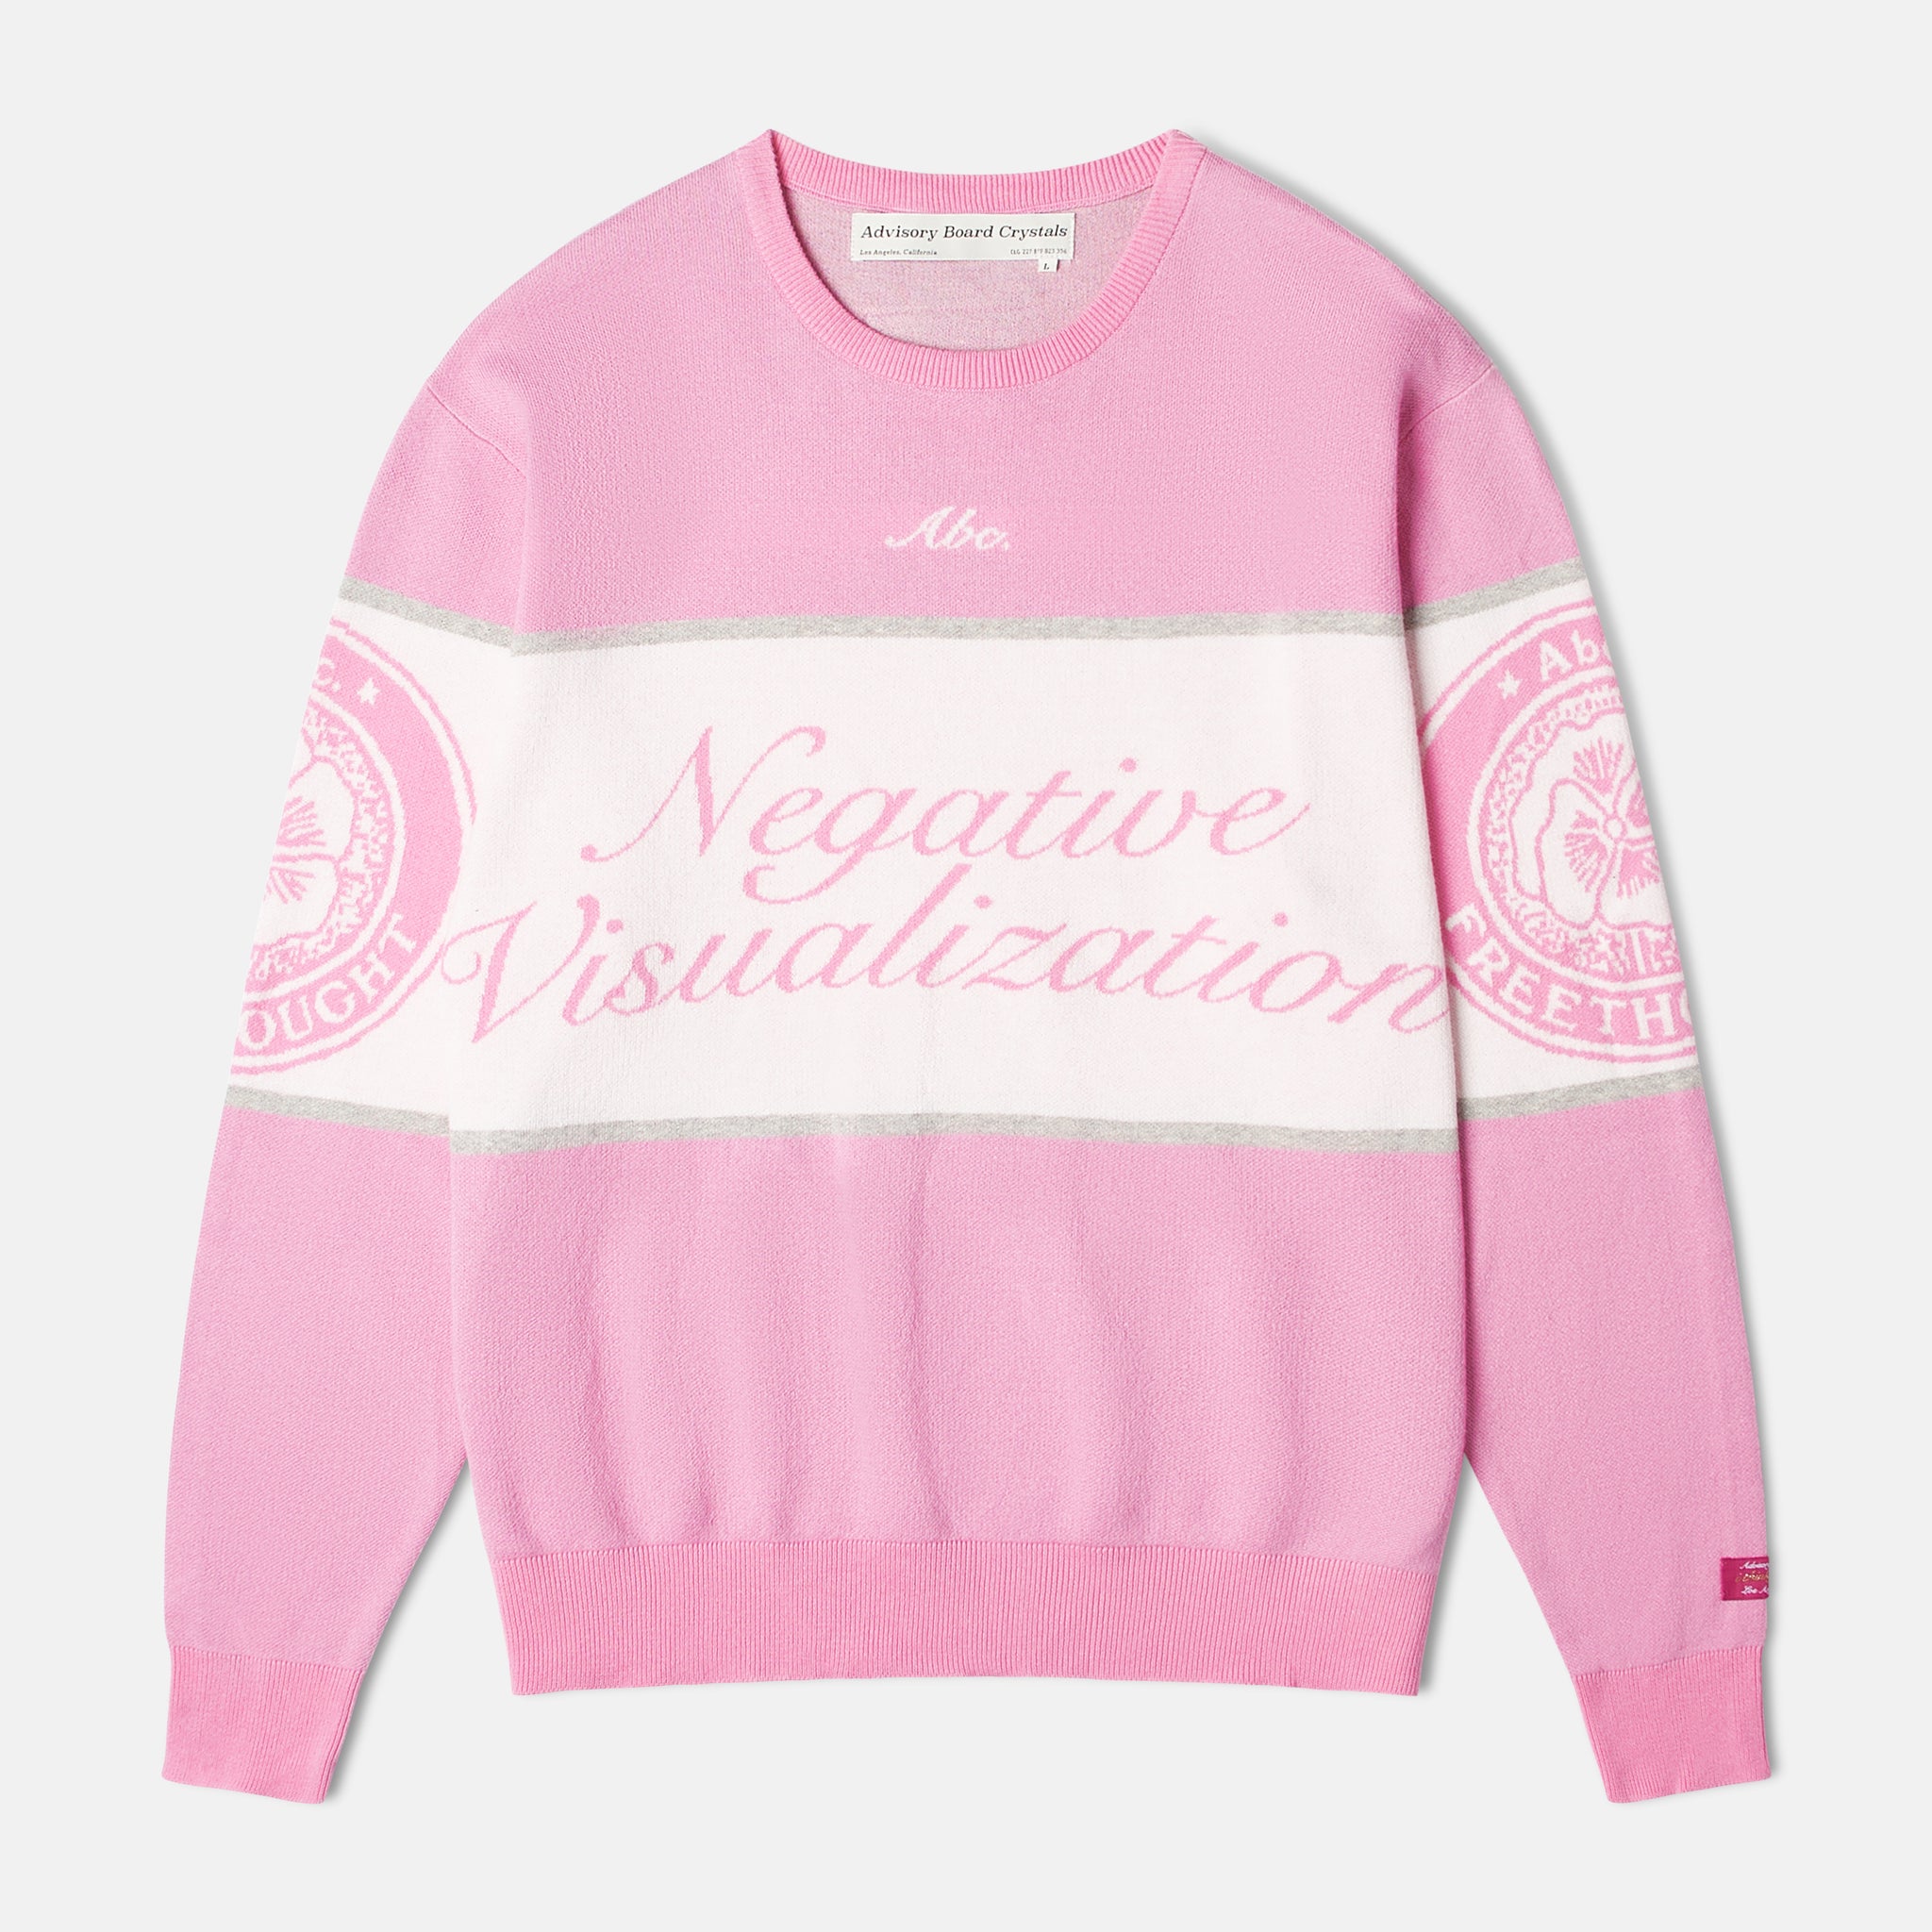 Abc. "Negative Visualization" Sweater (Rose Quartz)